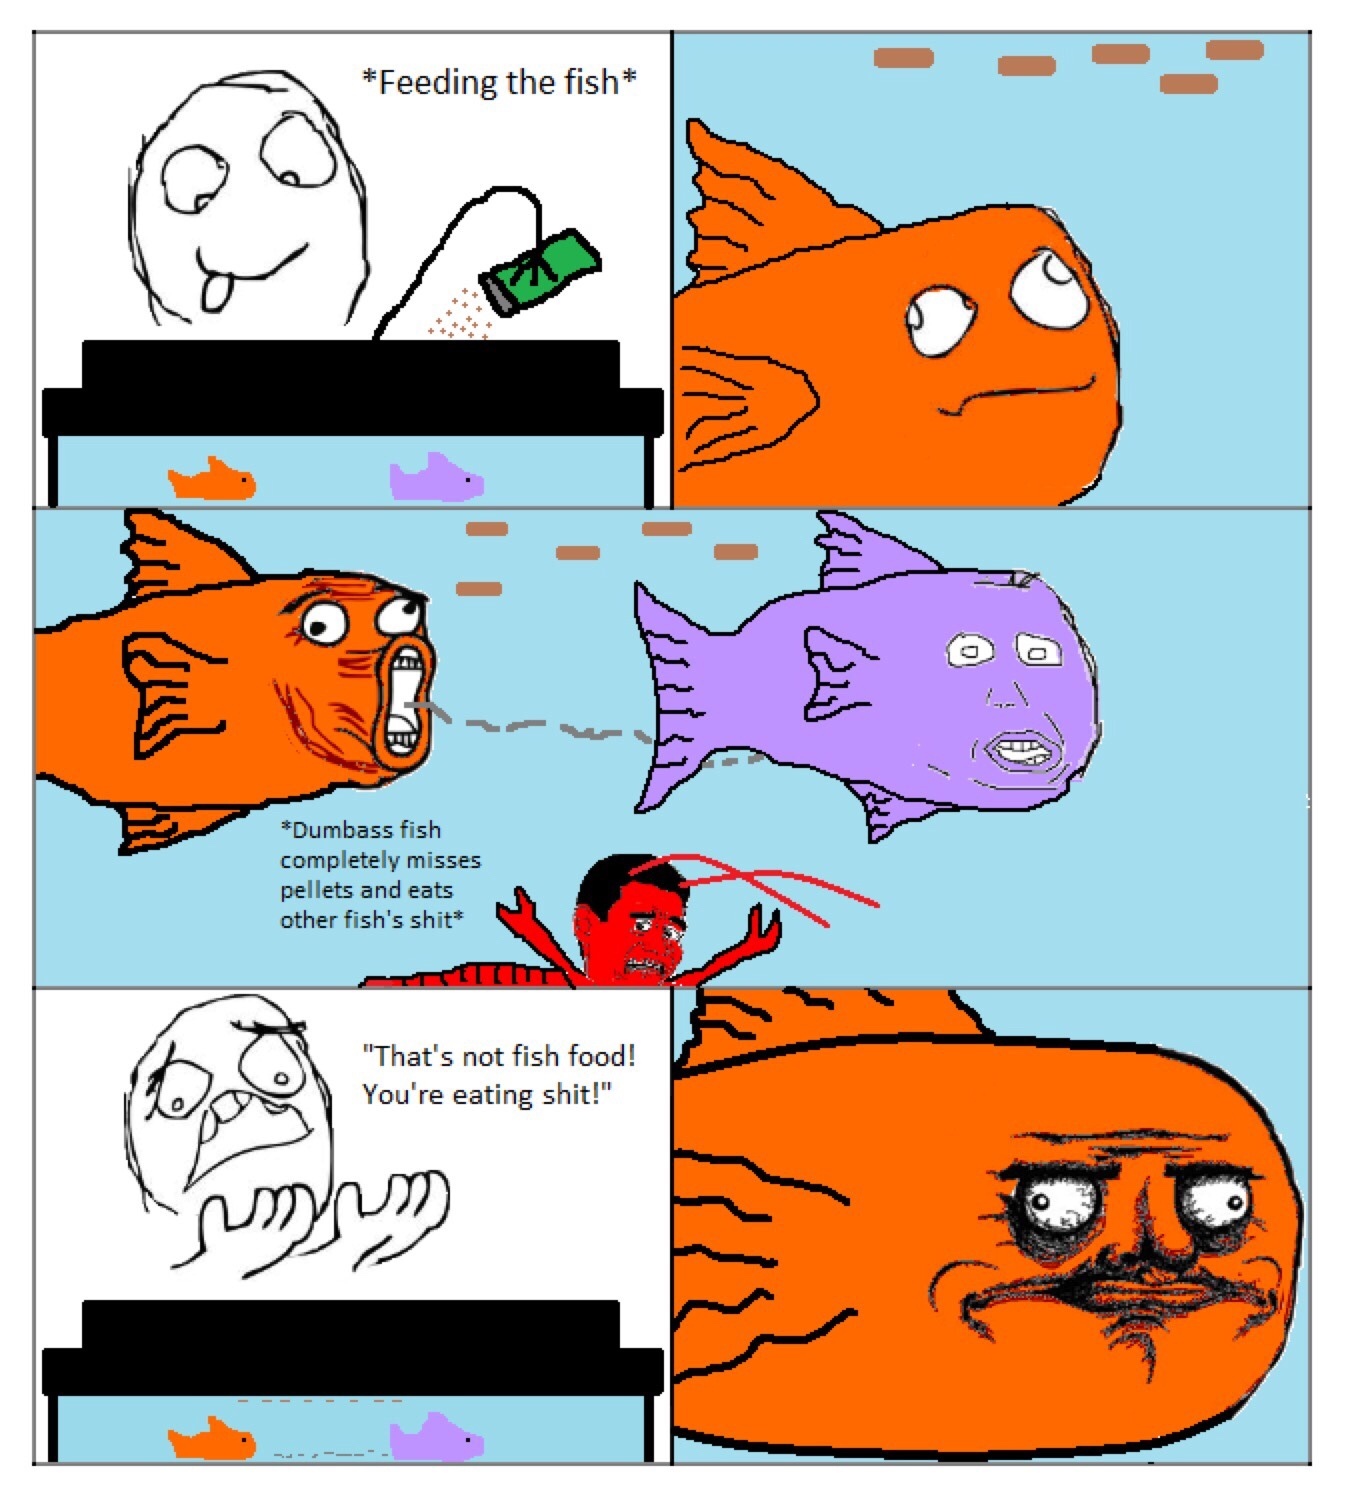 fish boom boom - meme